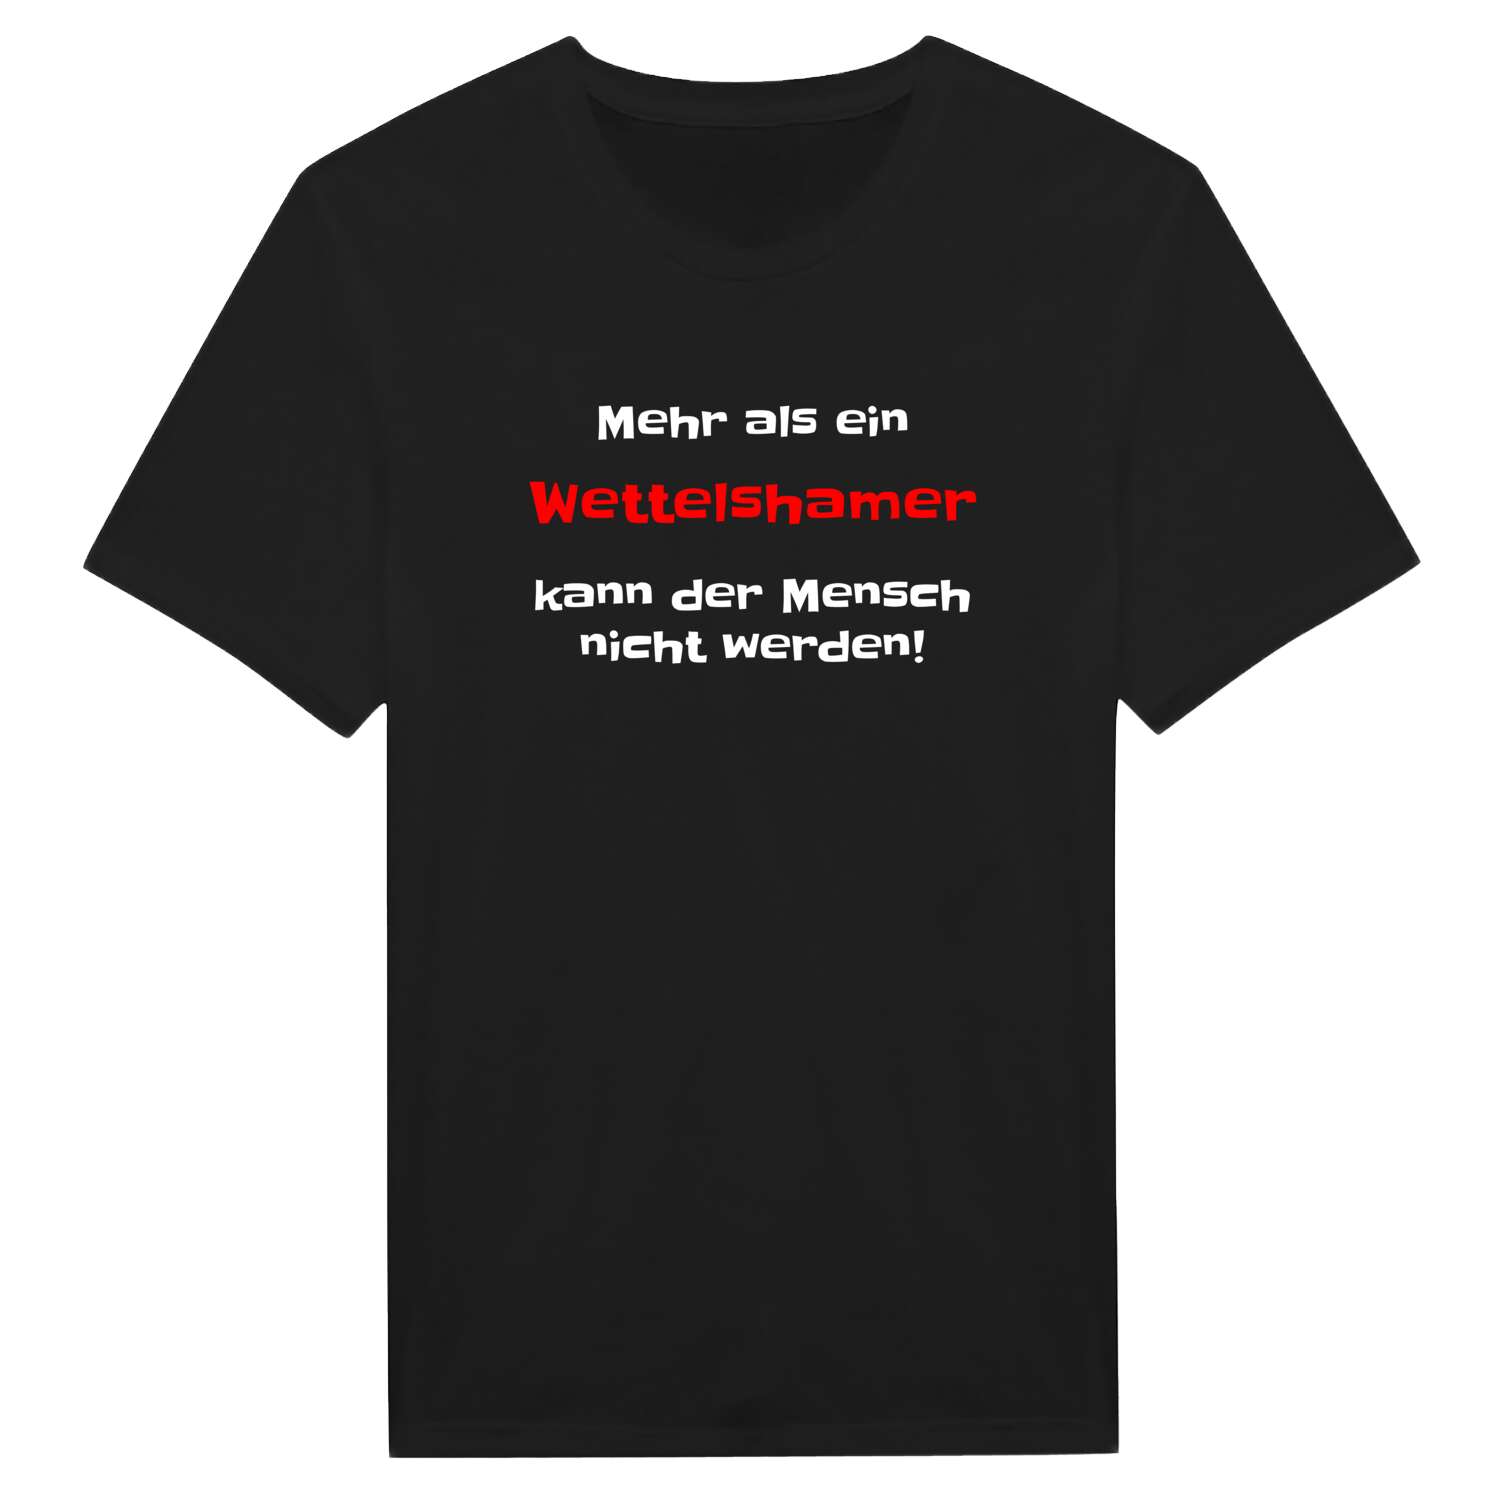 Wettelsham T-Shirt »Mehr als ein«